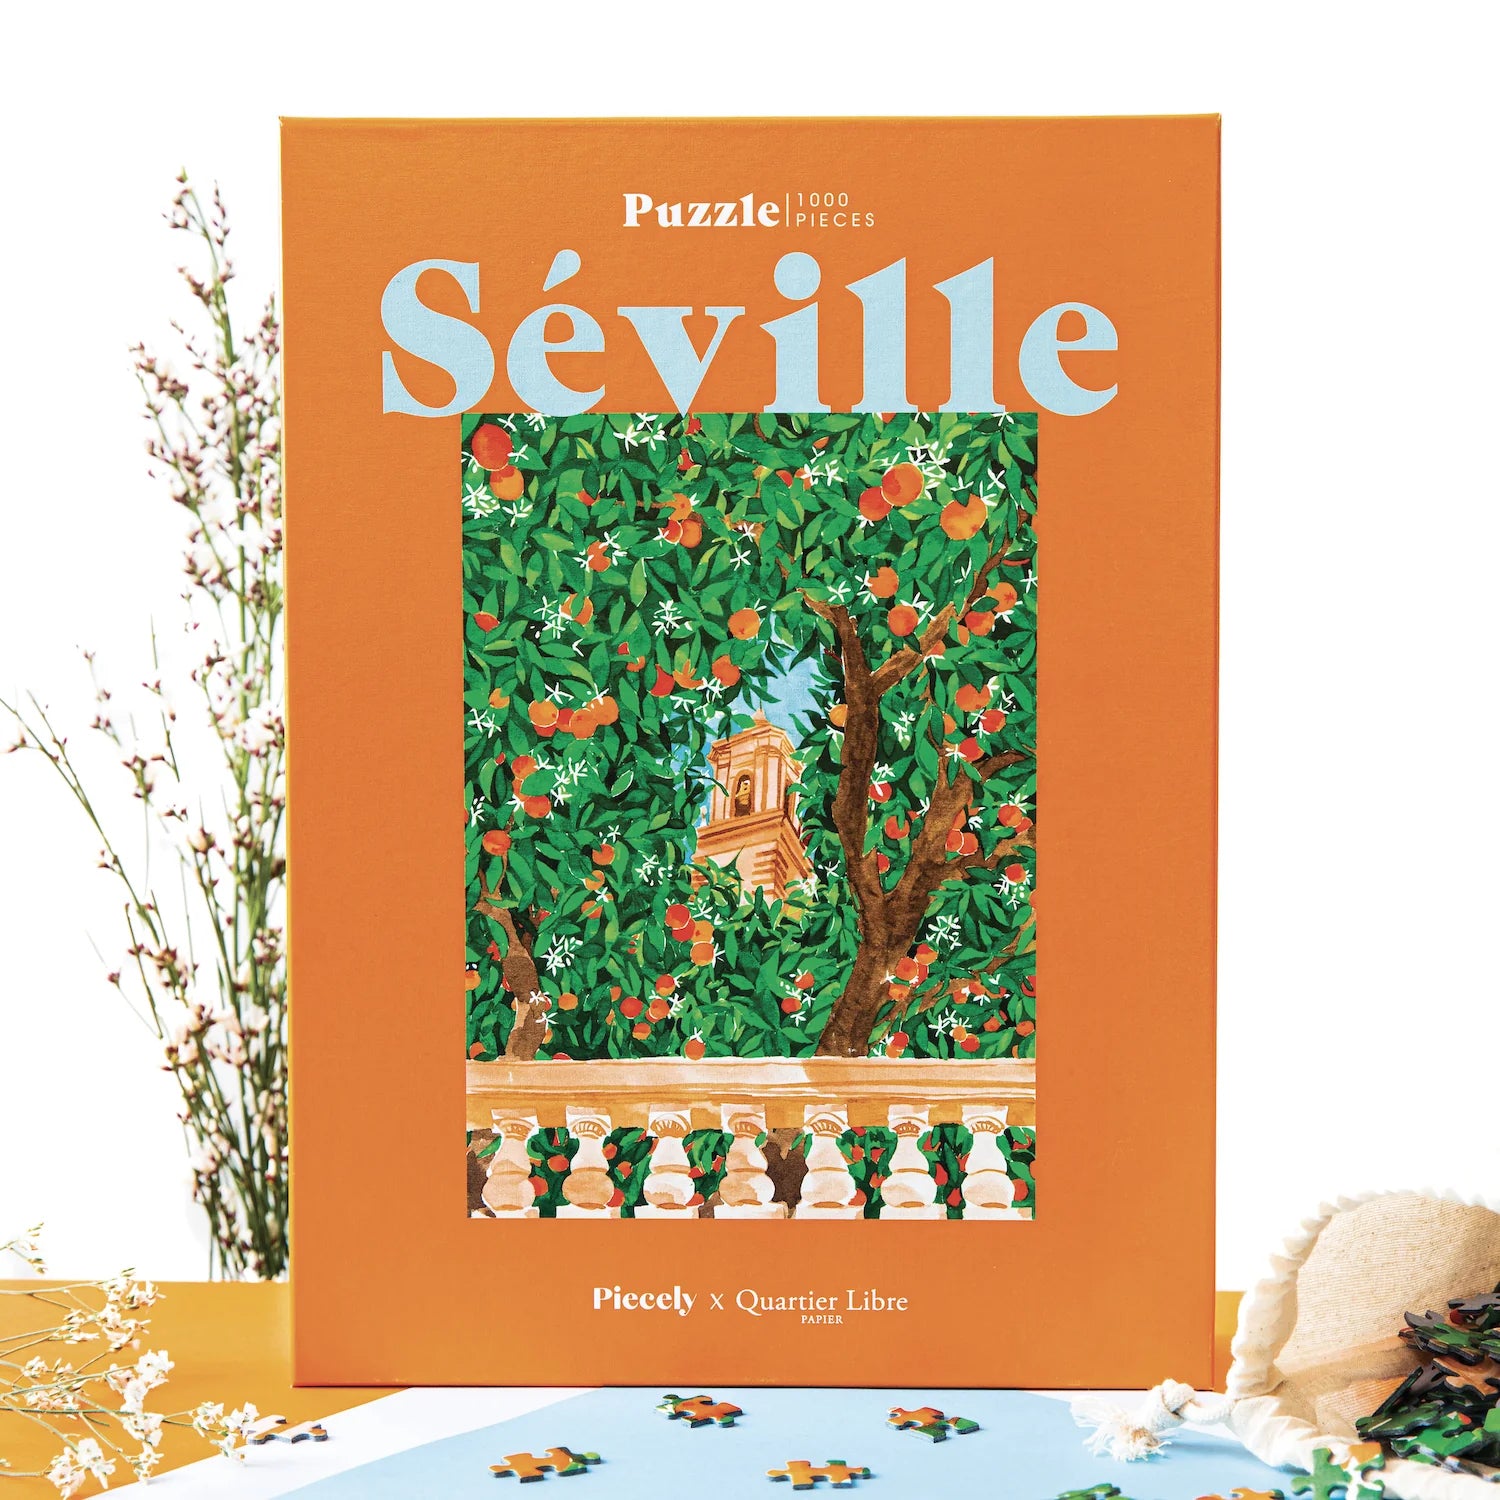 Séville puzzle, 1000 pieces